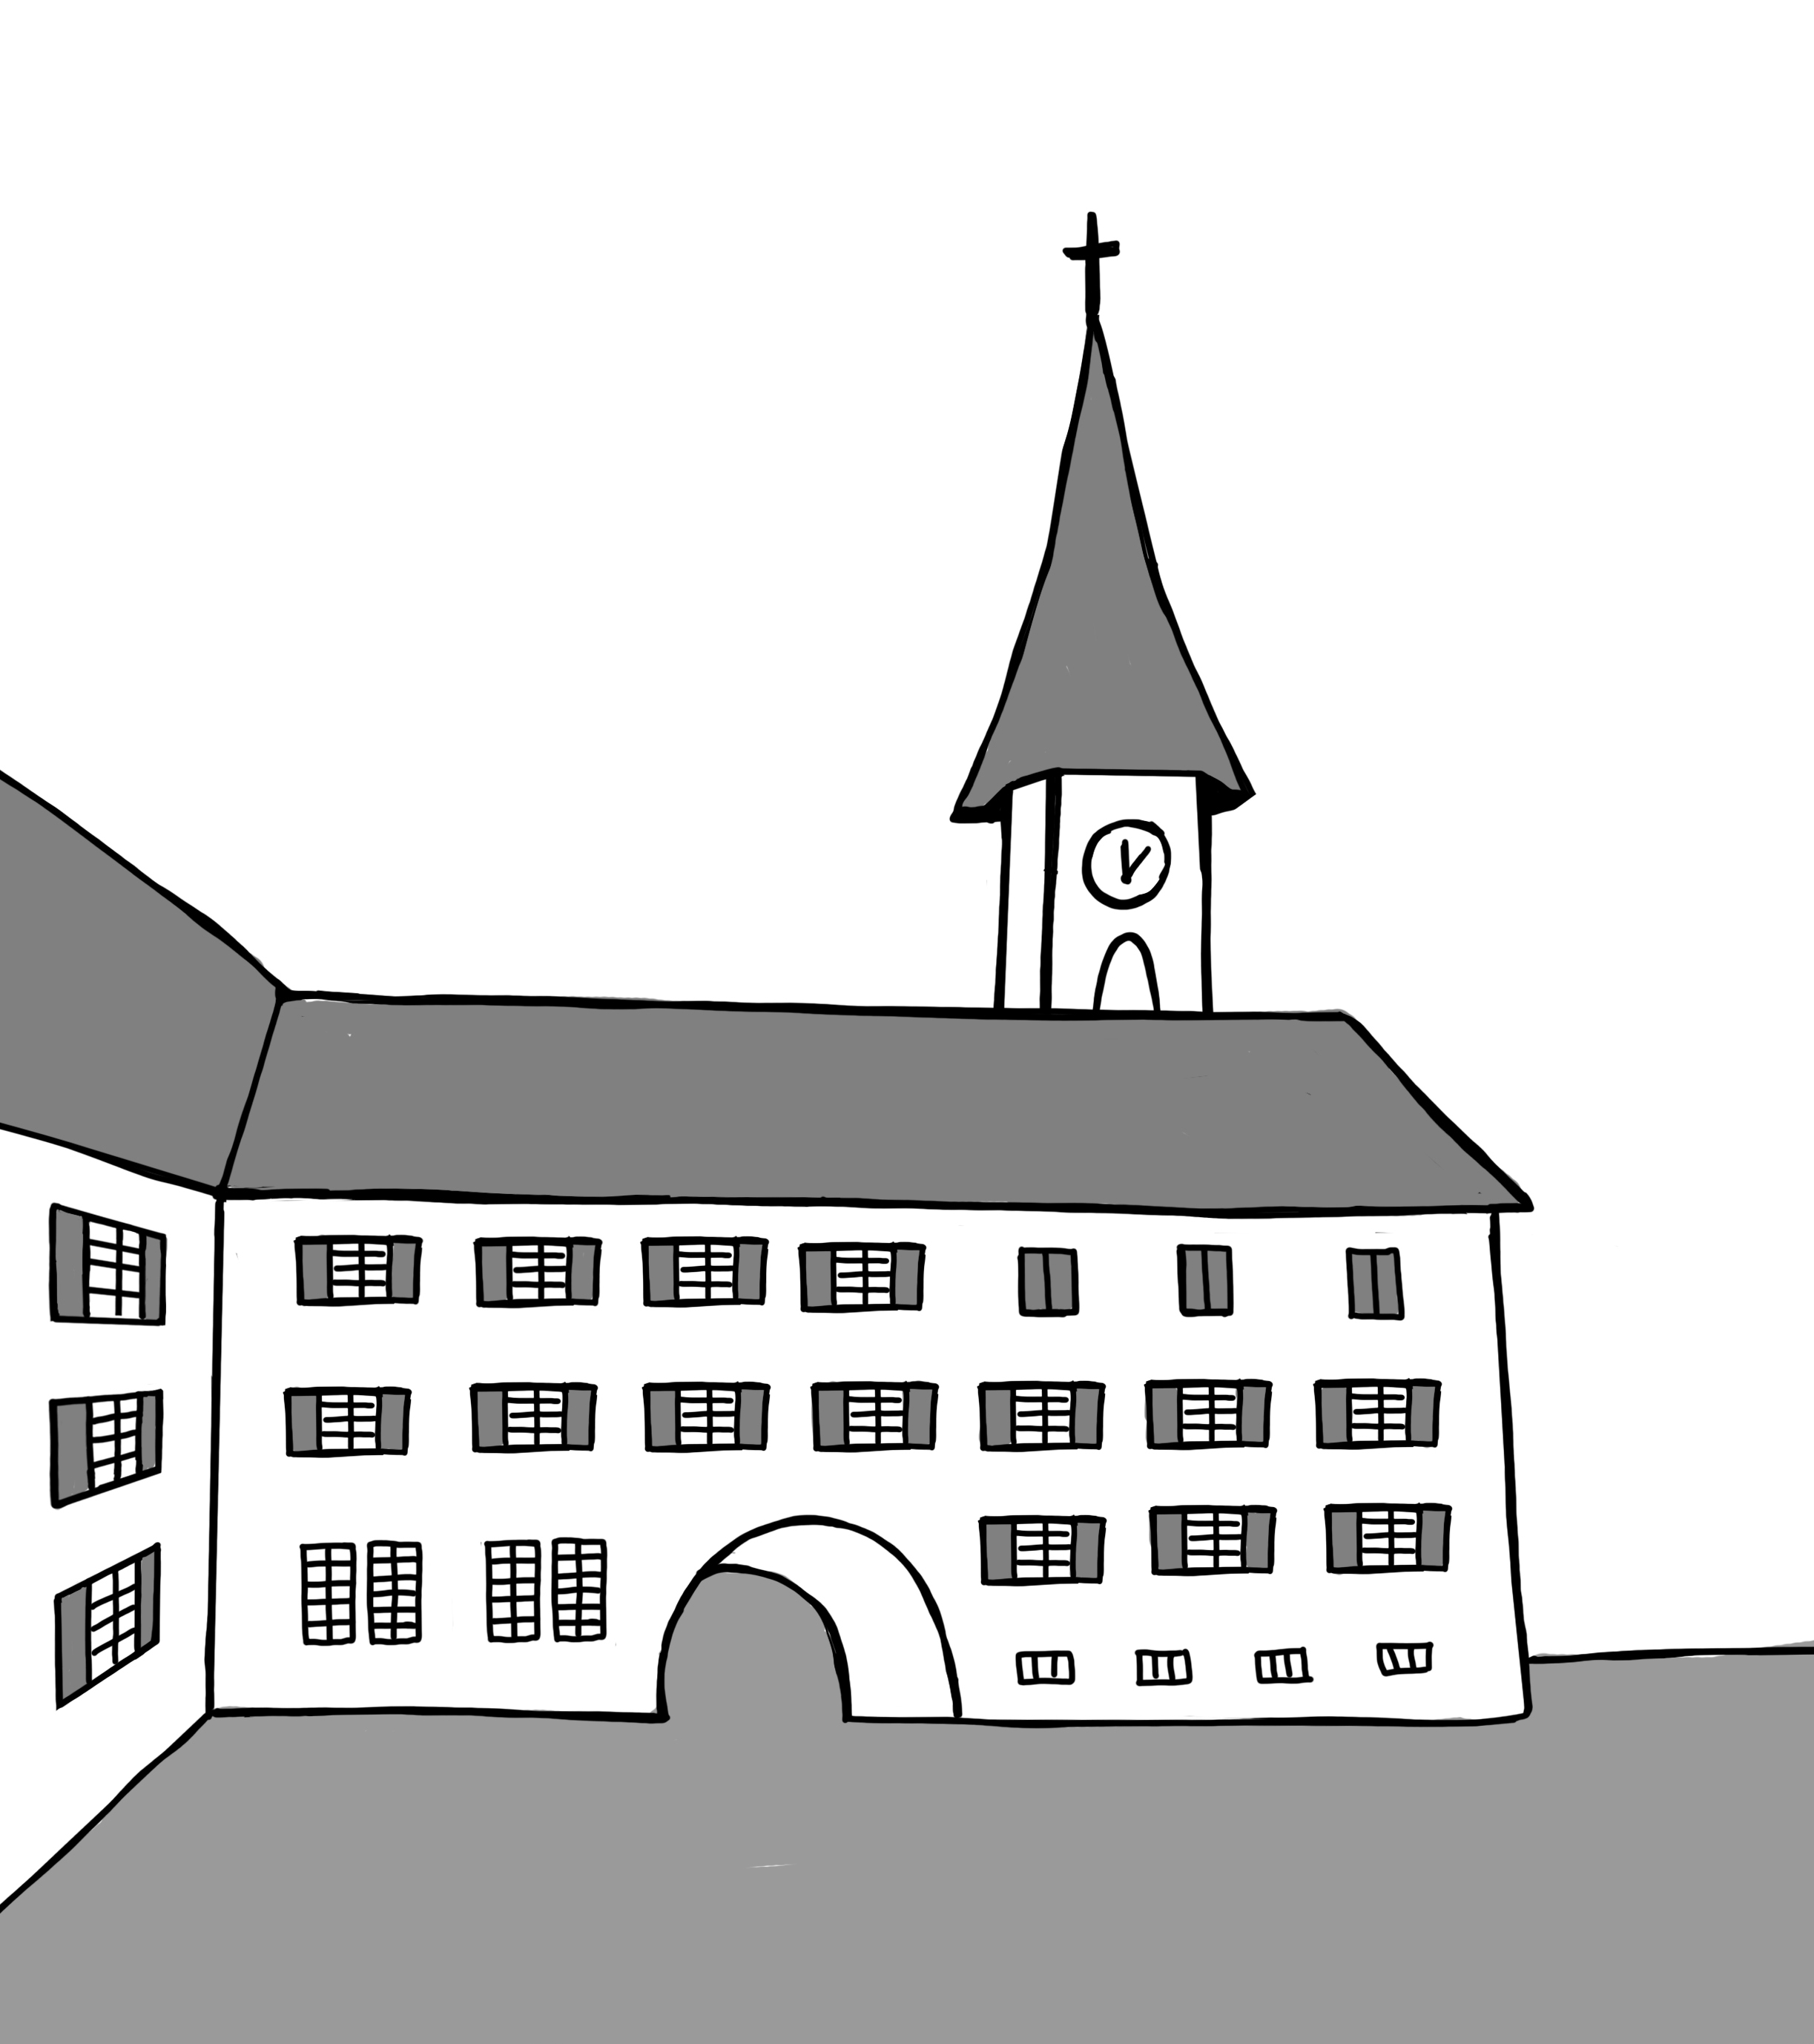 Kapuzinerkloster Solothurn und Einsiedelei